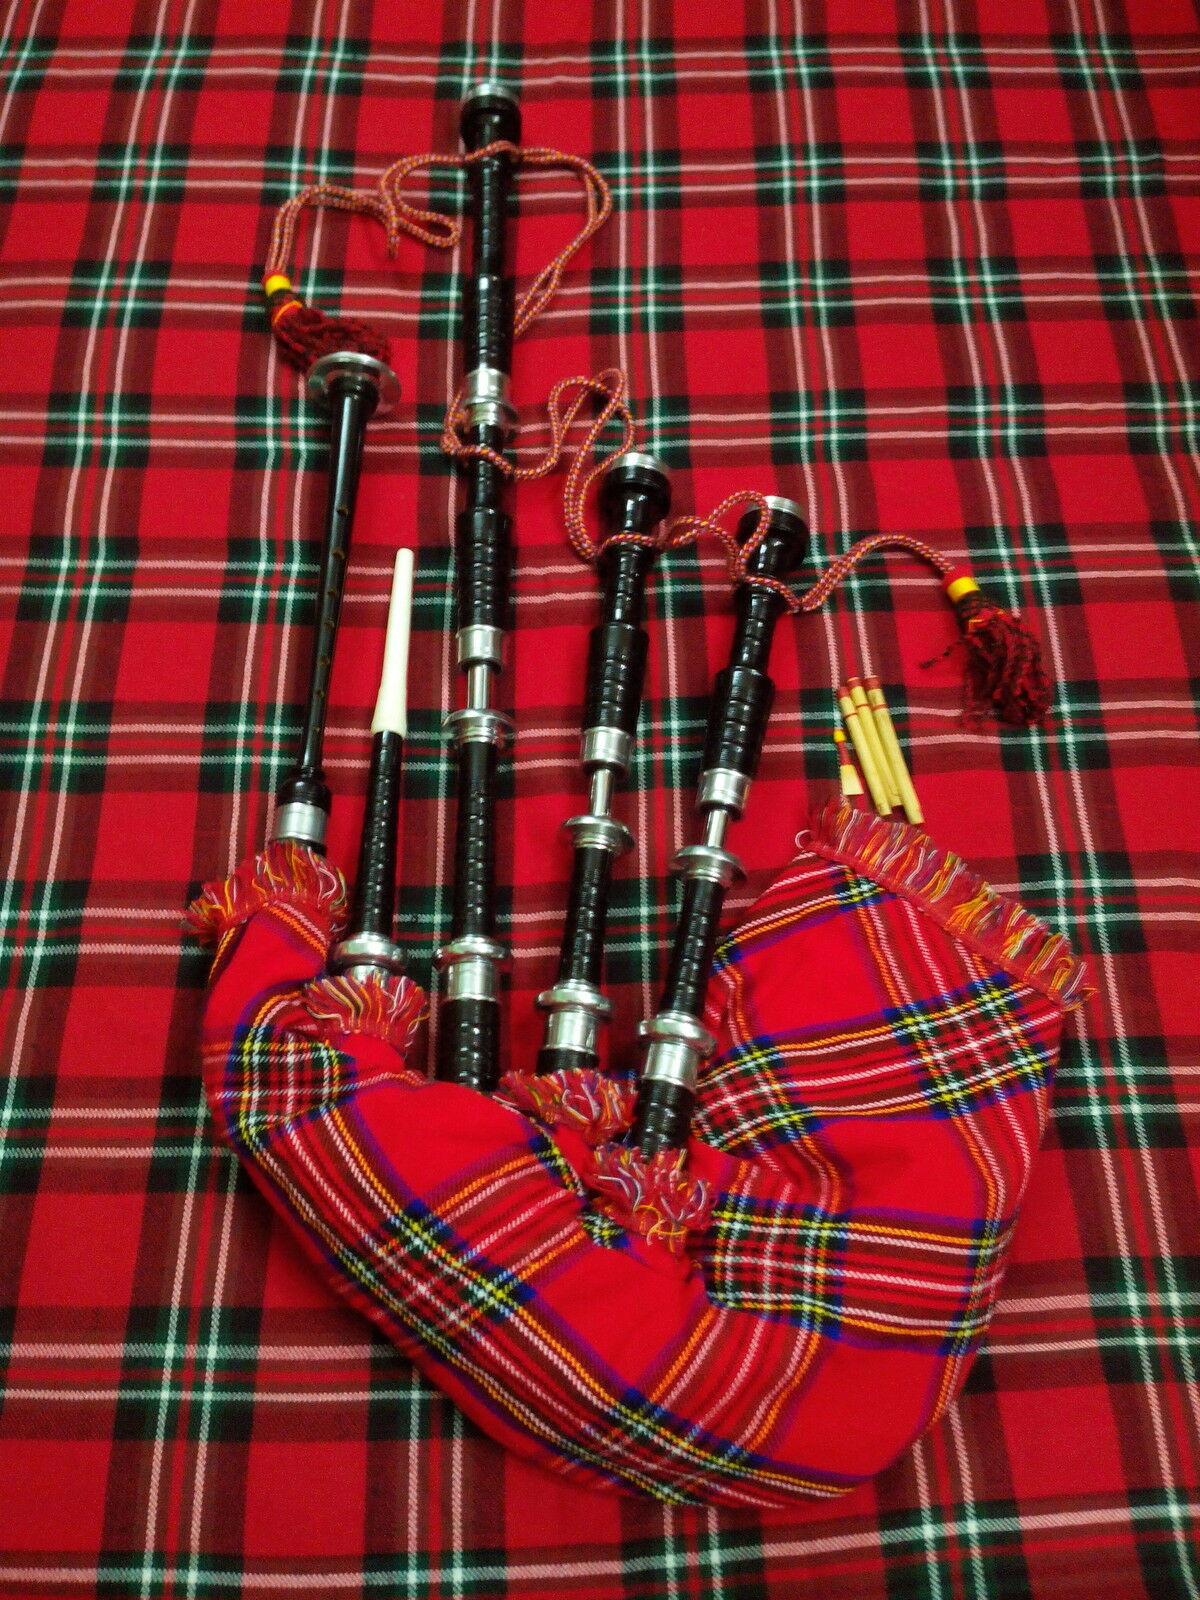 TC Scottish Bagpipes Rose Wood/Highland Bagpipes Full Size/Irish